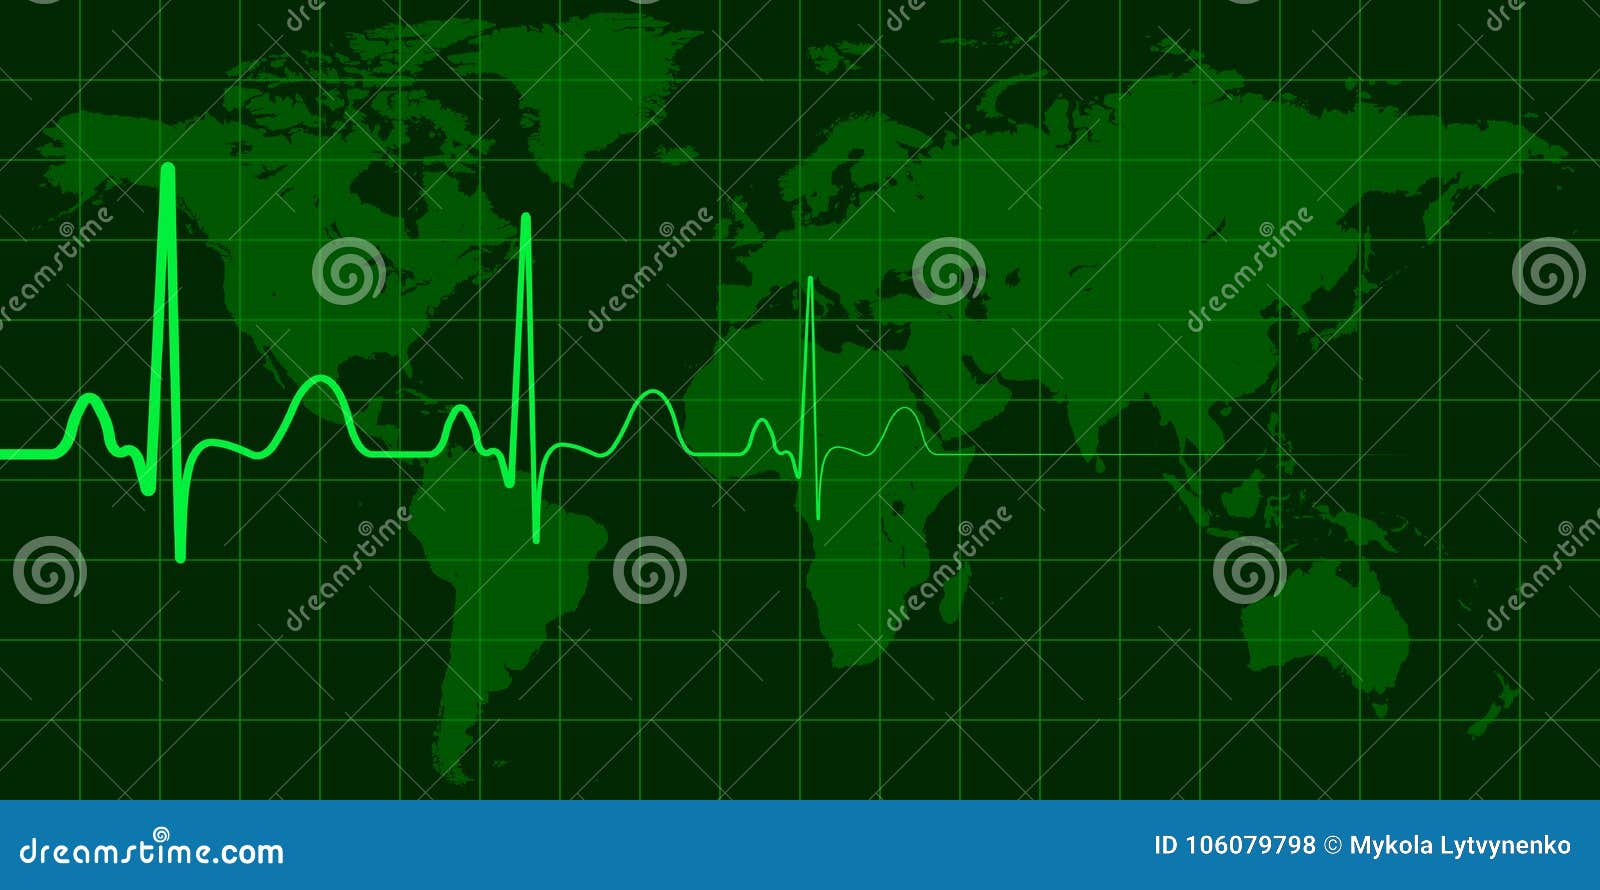 Världskarta med cardio pulsvektorbegrepp av den globala ändring, krisen och katastrofer, nyhetshändelser. Världskarta med cardio pulsvektorbegrepp av global ändring, kris och katastrofer, nyhetshändelsepolitikväder och miljö